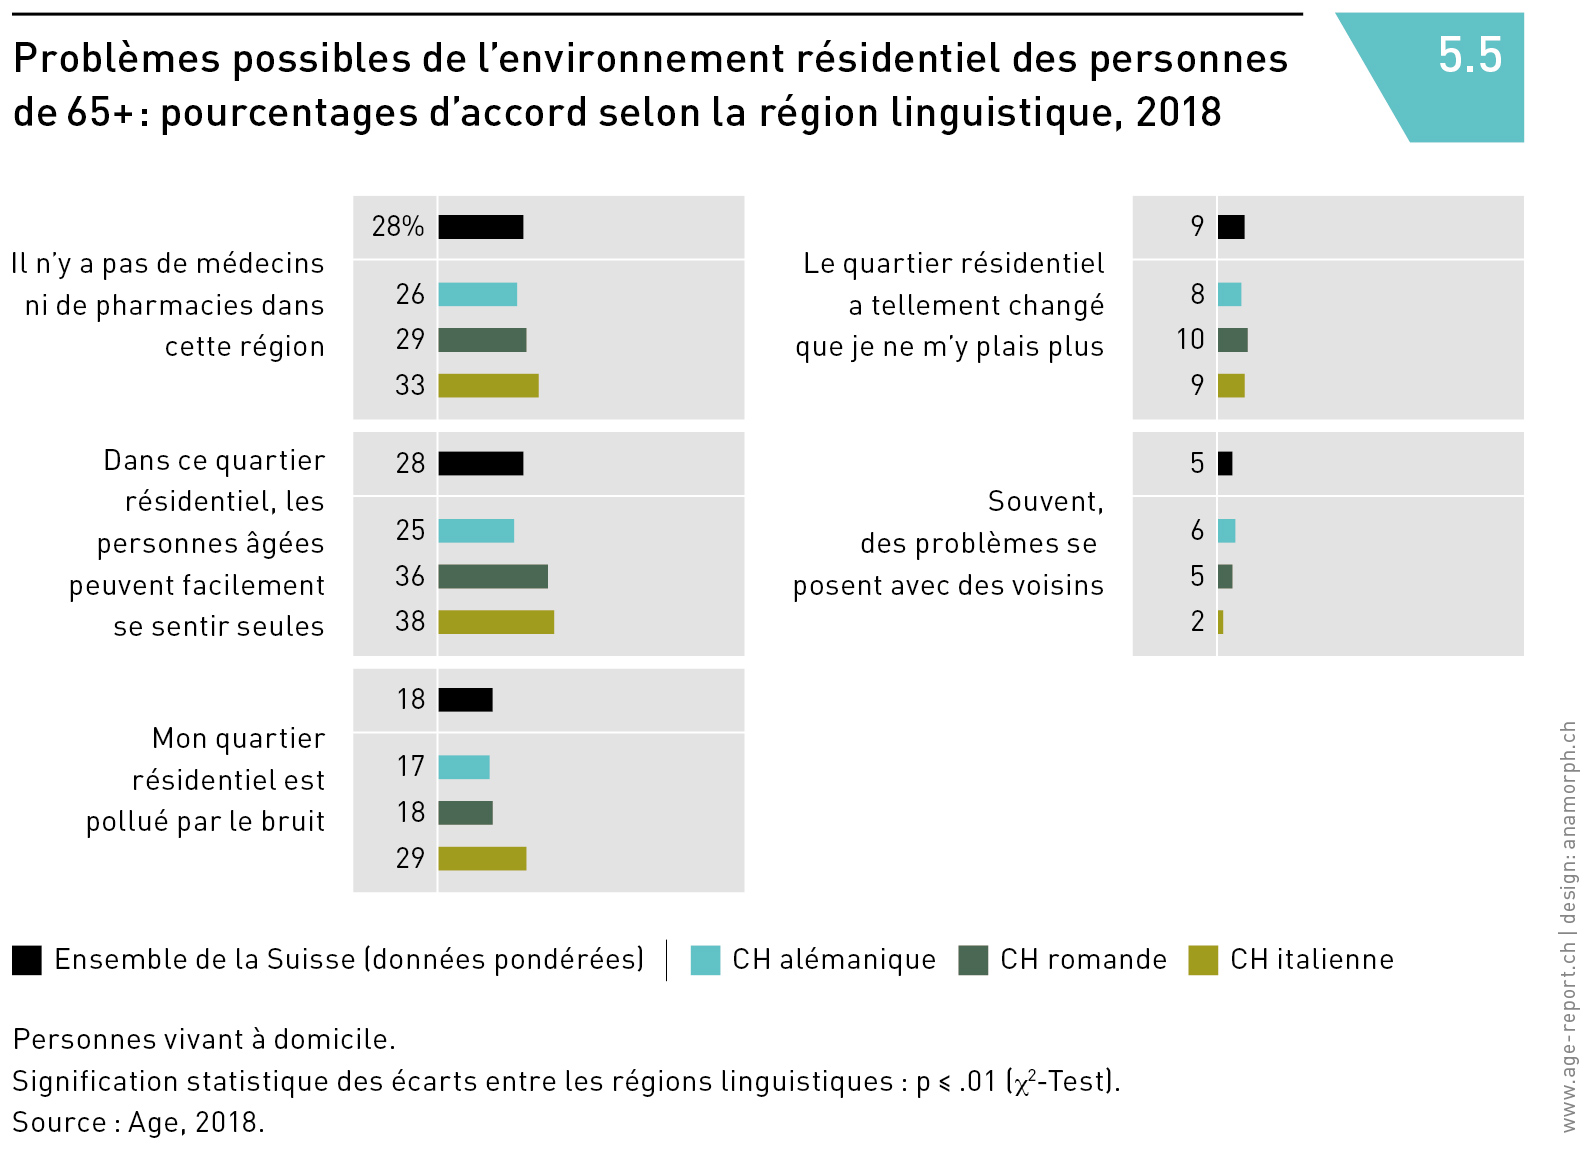 Problèmes possibles de l’environnement résidentiel des personnes
de 65+ : pourcentages d’accord selon la région linguistique, 2018